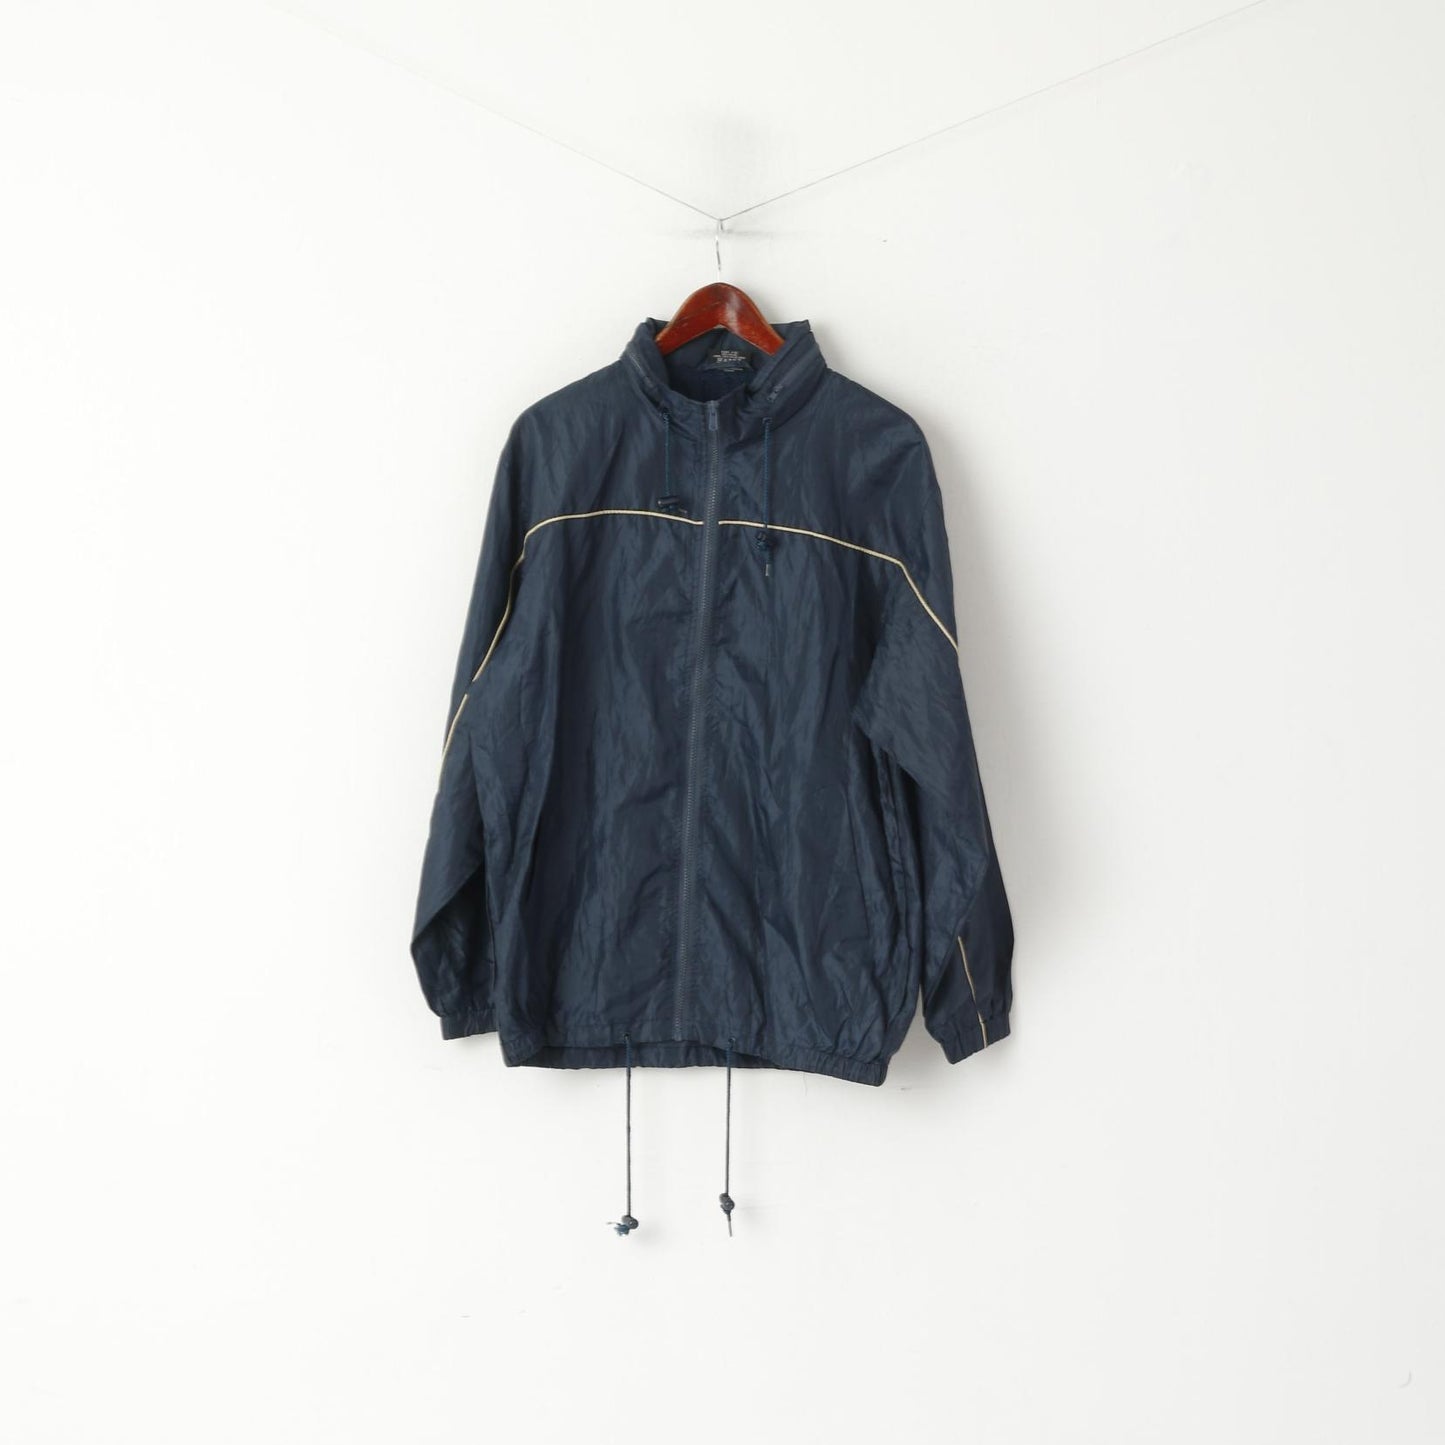 Originals Men L Jacket Navy Vintage Nylon Waterproof Hidden Hood Full Zipper Rain Top